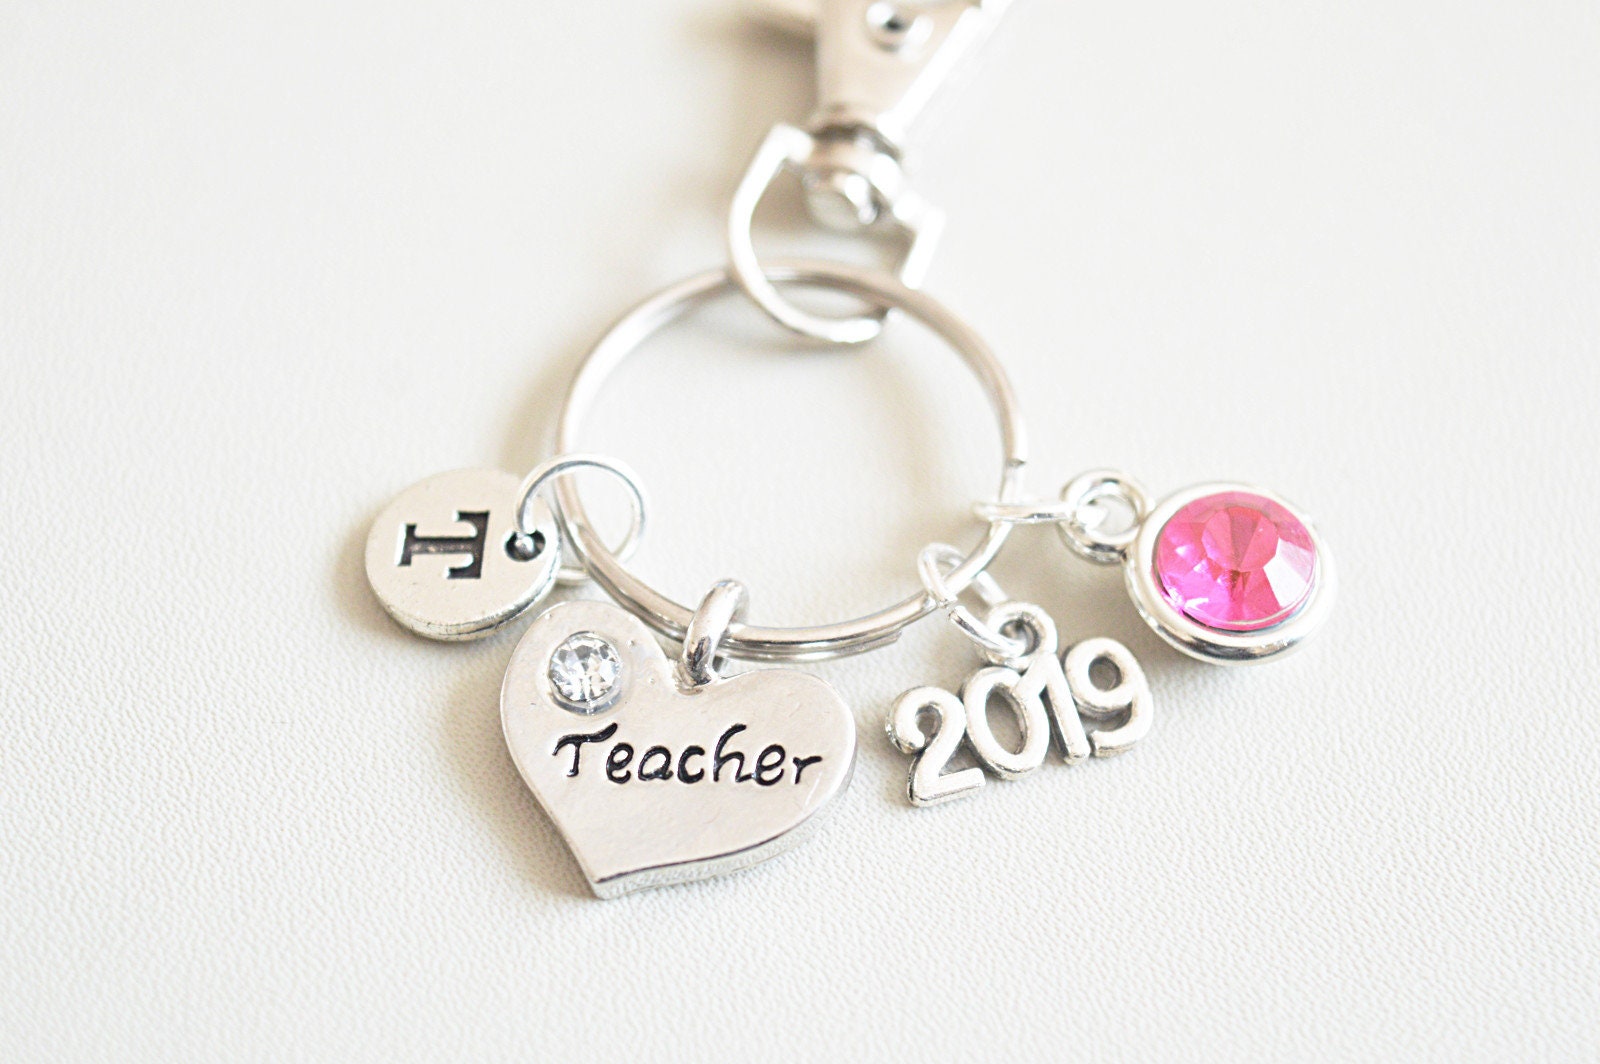 Teacher Gifts, Teacher Keychain, Teacher Keyring, Teacher Charm Gift, Teaching, Gift for Teacher, Teacher Appreciation, Teacher Retirement